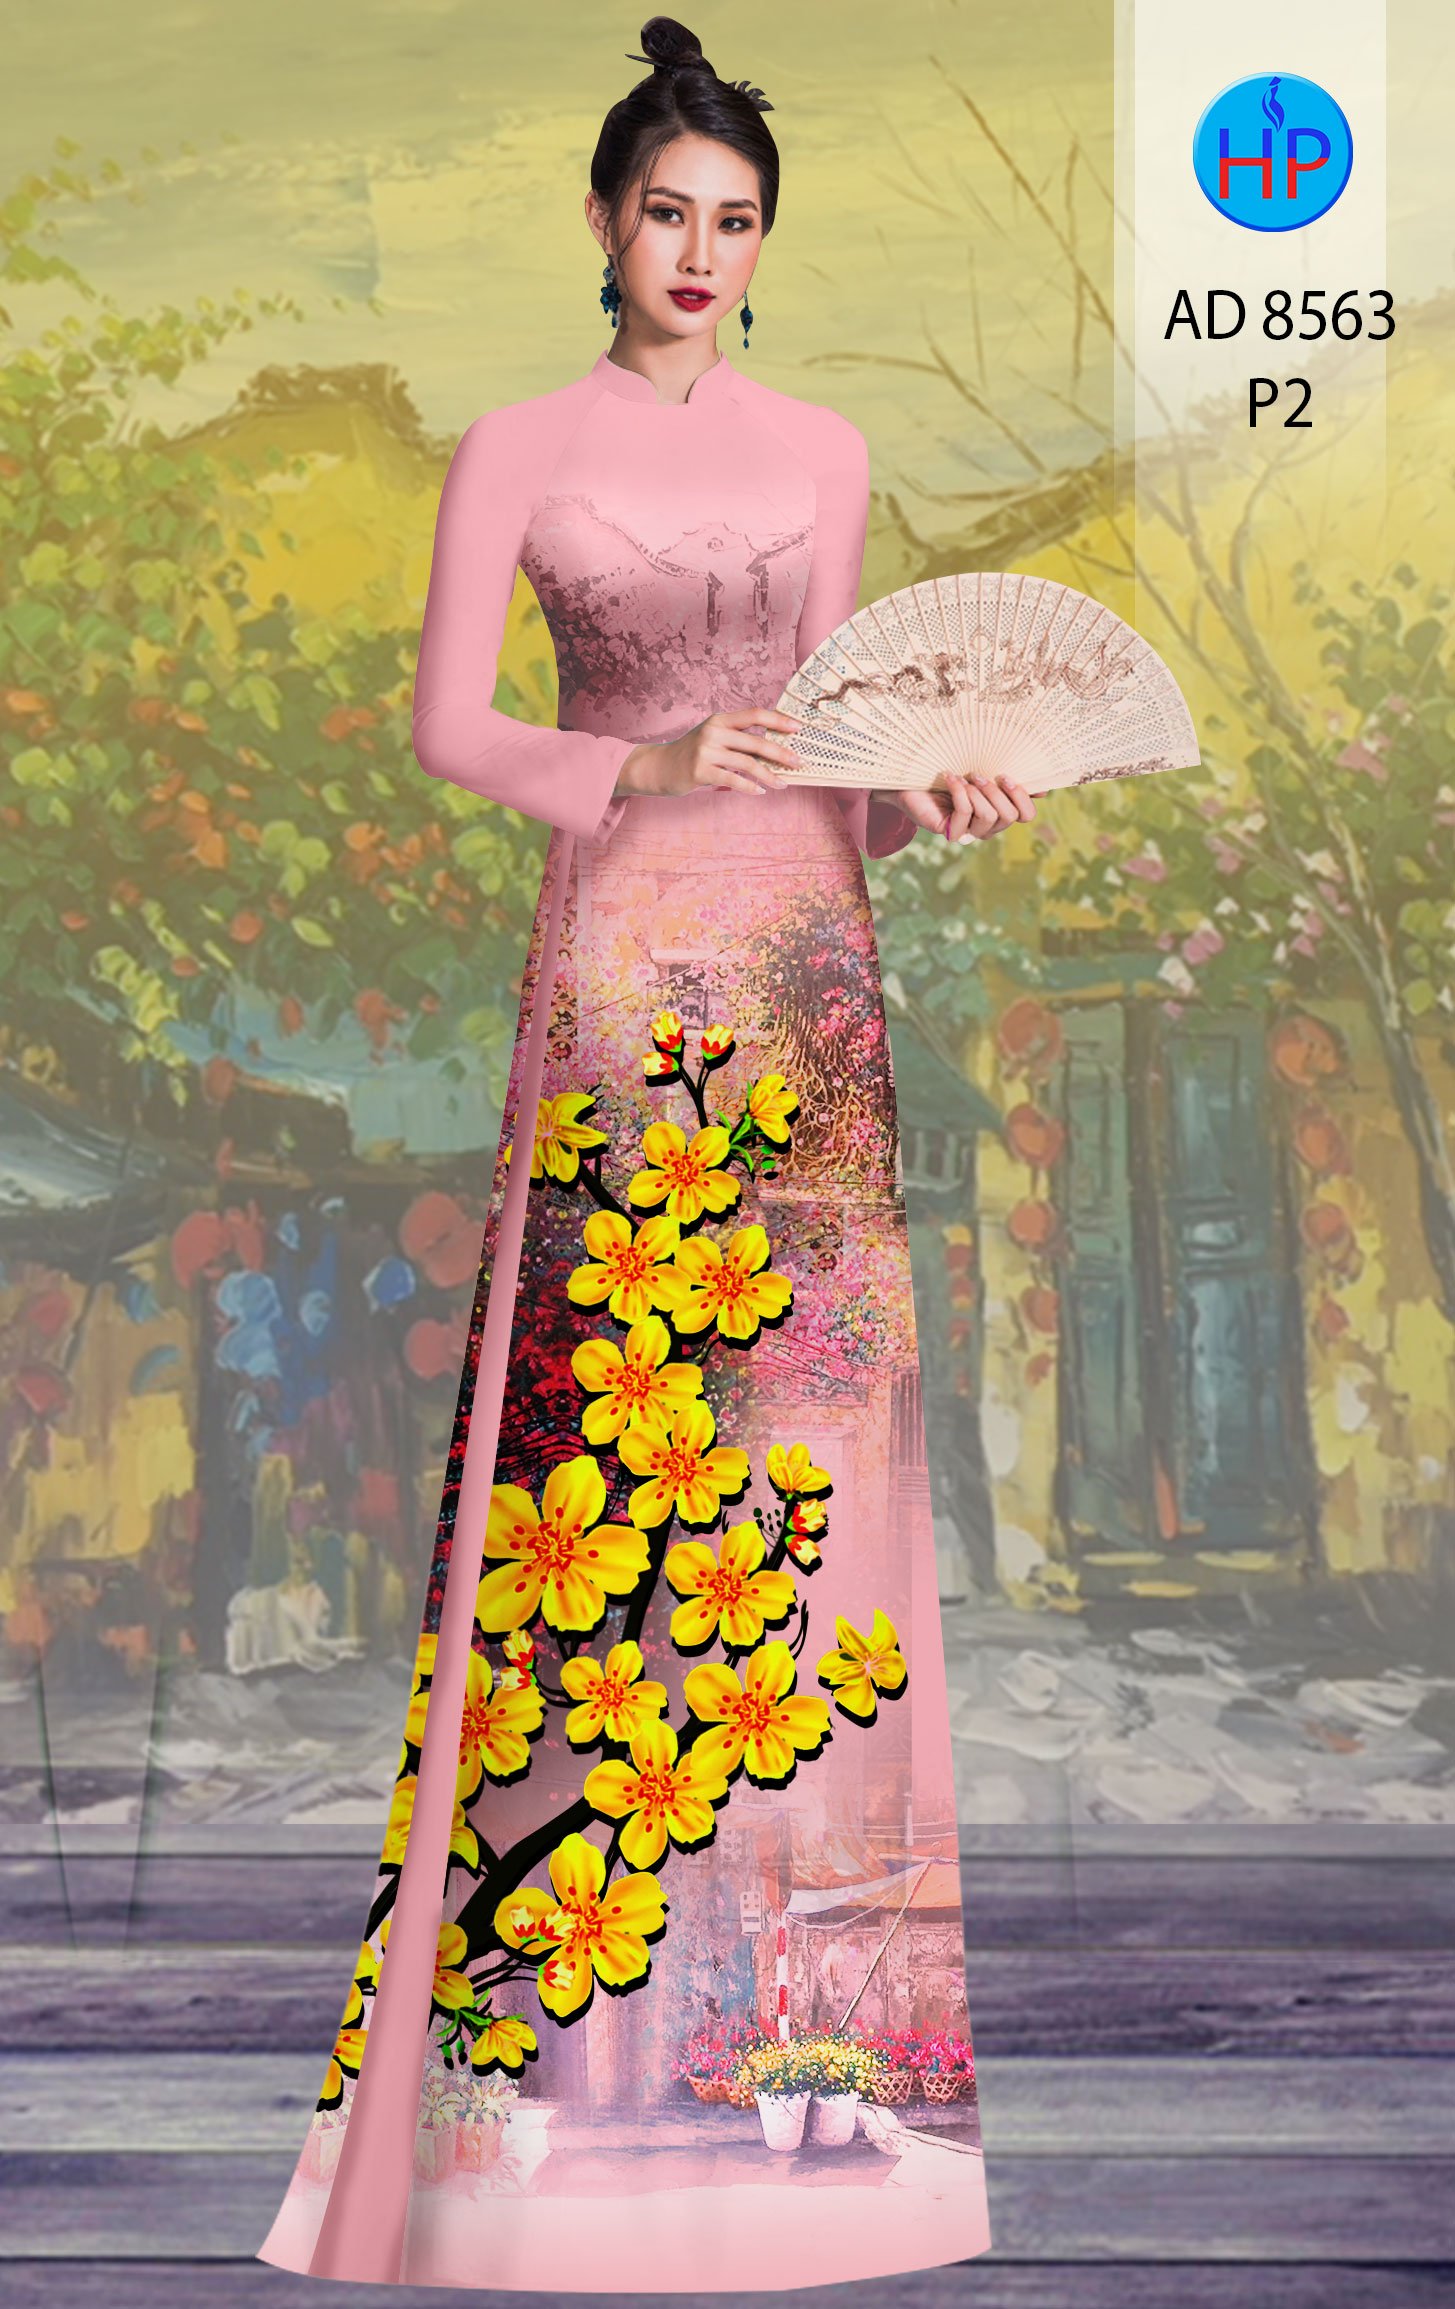 Áo dài hoa mai là trang phục truyền thống của người Việt Nam, với họa tiết hoa mai tươi sáng và rực rỡ. Áo dài hoa mai không chỉ mang trong mình vẻ đẹp truyền thống mà còn là biểu tượng của sự thanh lịch và sang trọng. Hãy xem hình ảnh liên quan để ngắm nhìn vẻ đẹp của trang phục cổ truyền này.